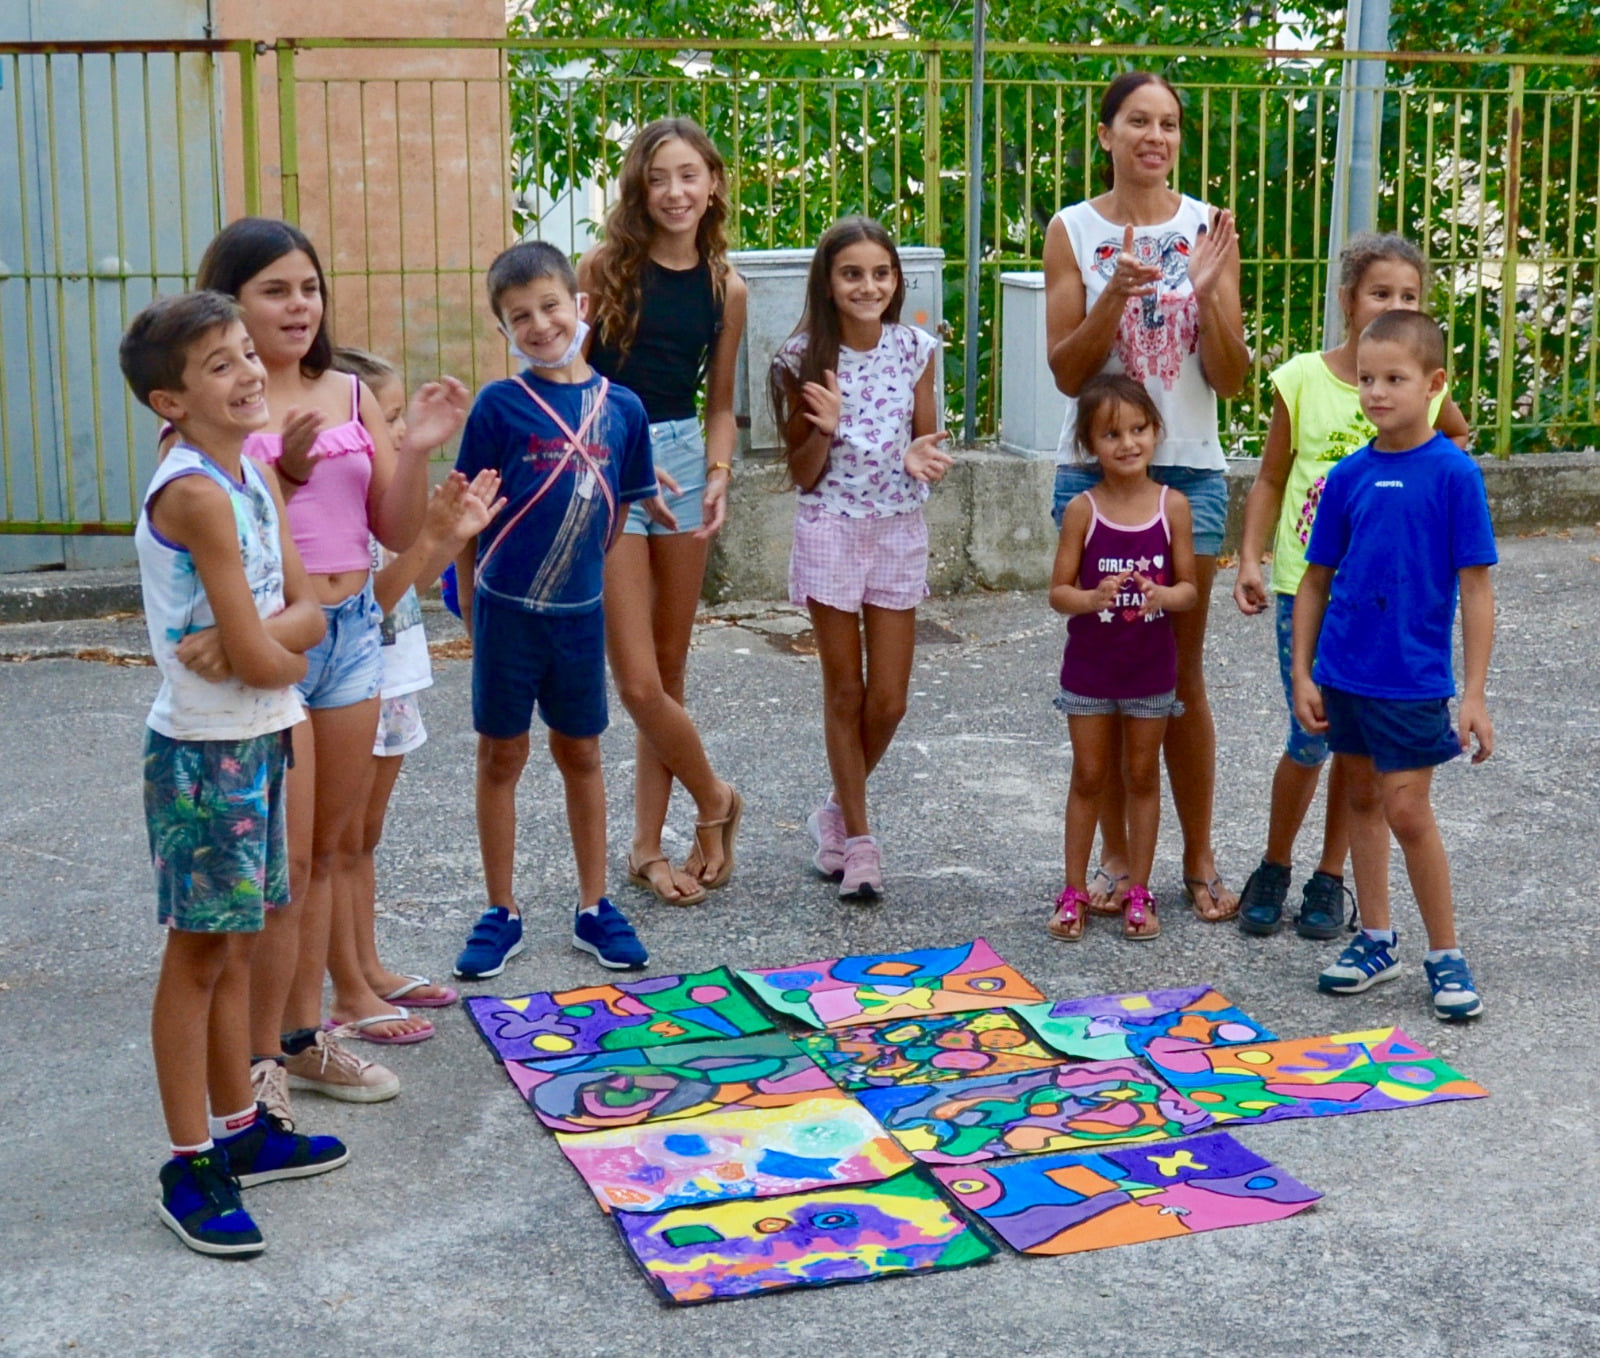 Tanti colori e tante tecniche artistiche differenti a ravvivare i giorni d'estate di Carpineto insieme alla presidentessa Stefania Silvidii.